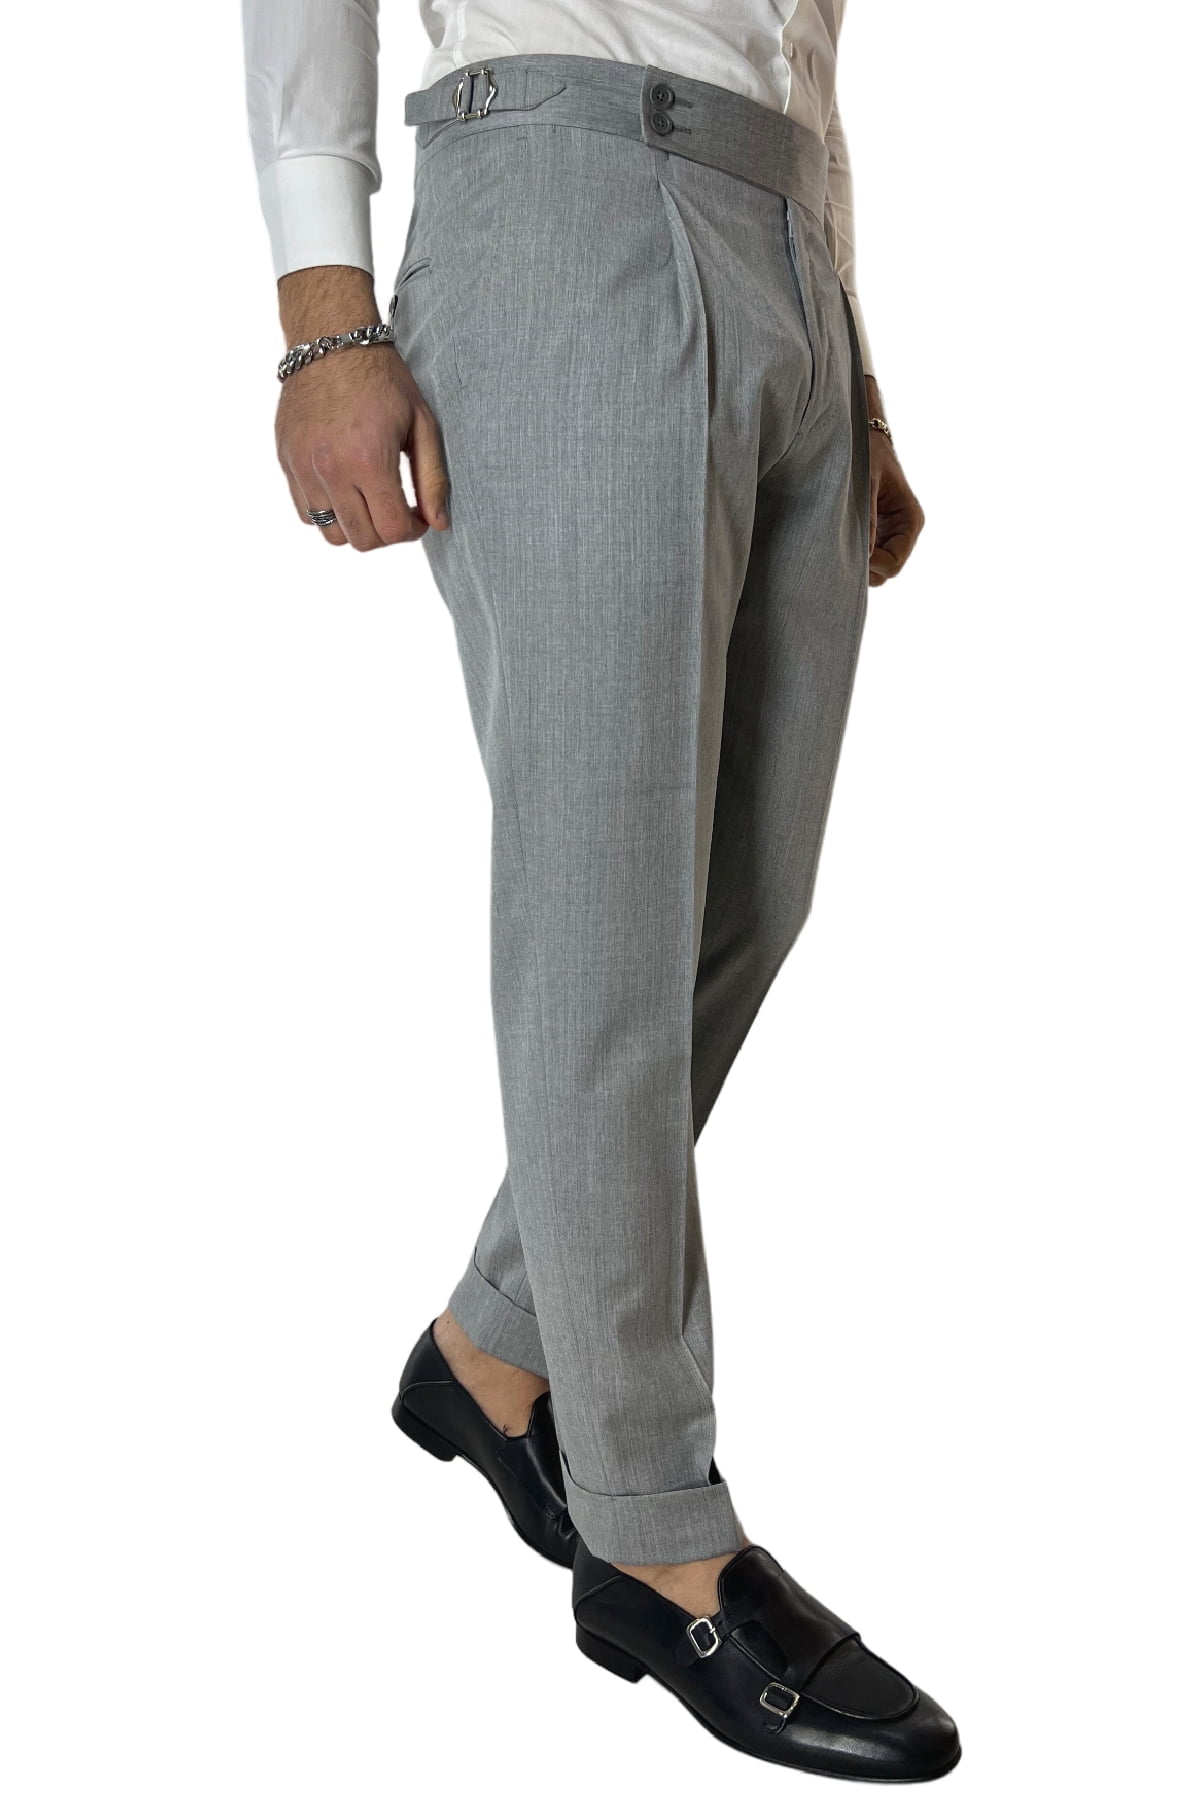 Pantalone uomo grigio chiaro fresco lana Vitale Barberis vita alta con pinces fibbie laterali e risvolto 4cm